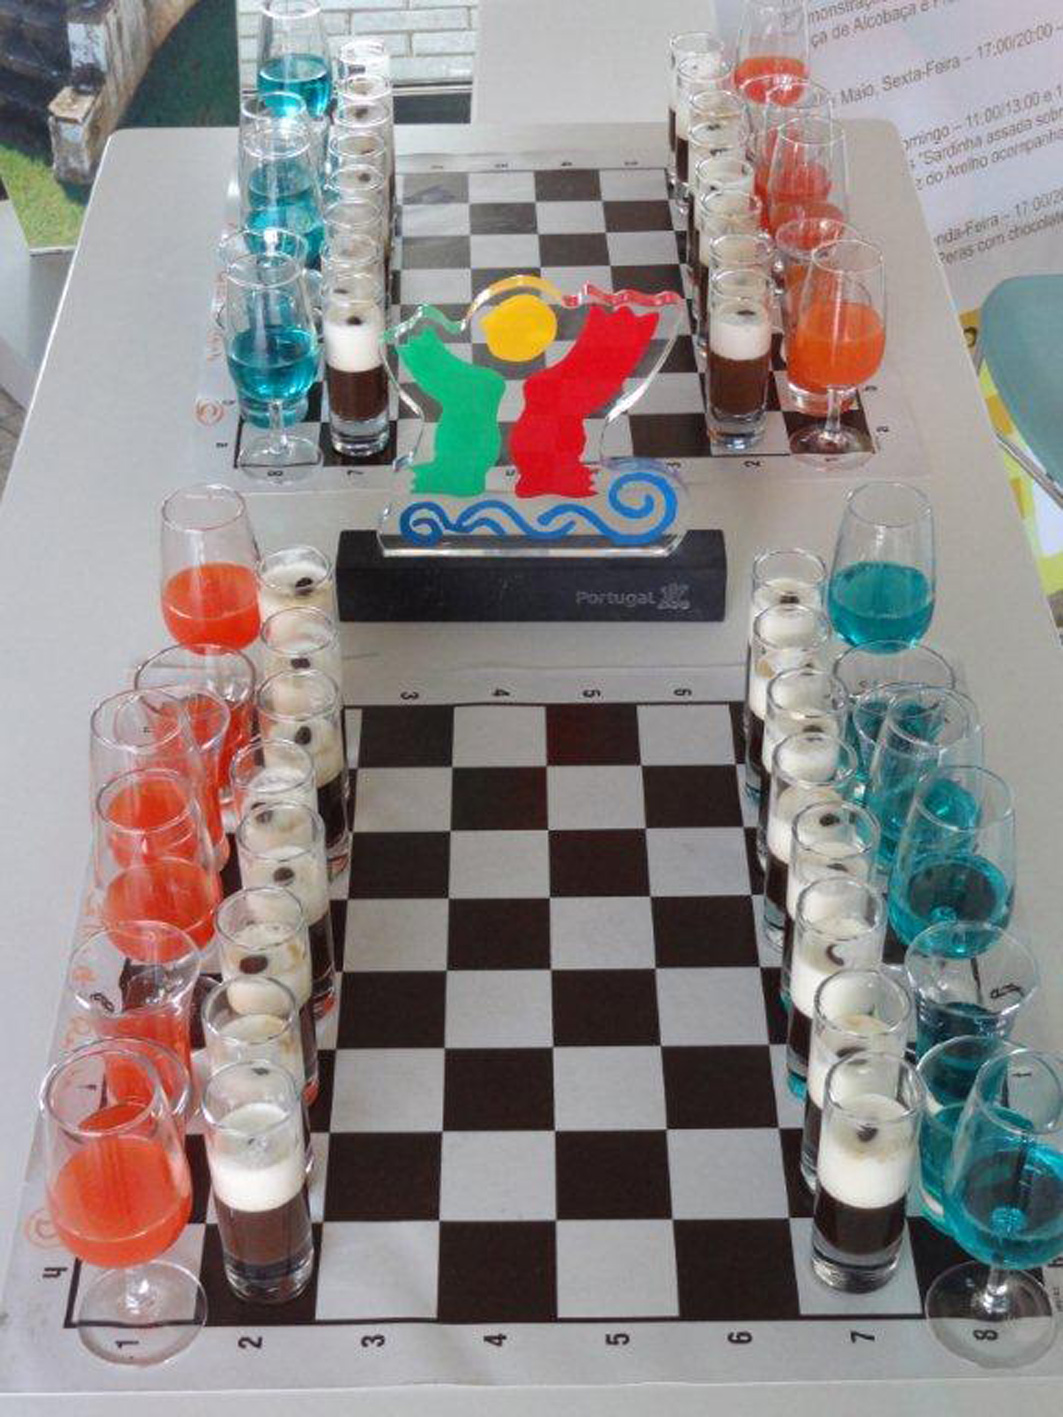 Jogo de xadrez inovador  